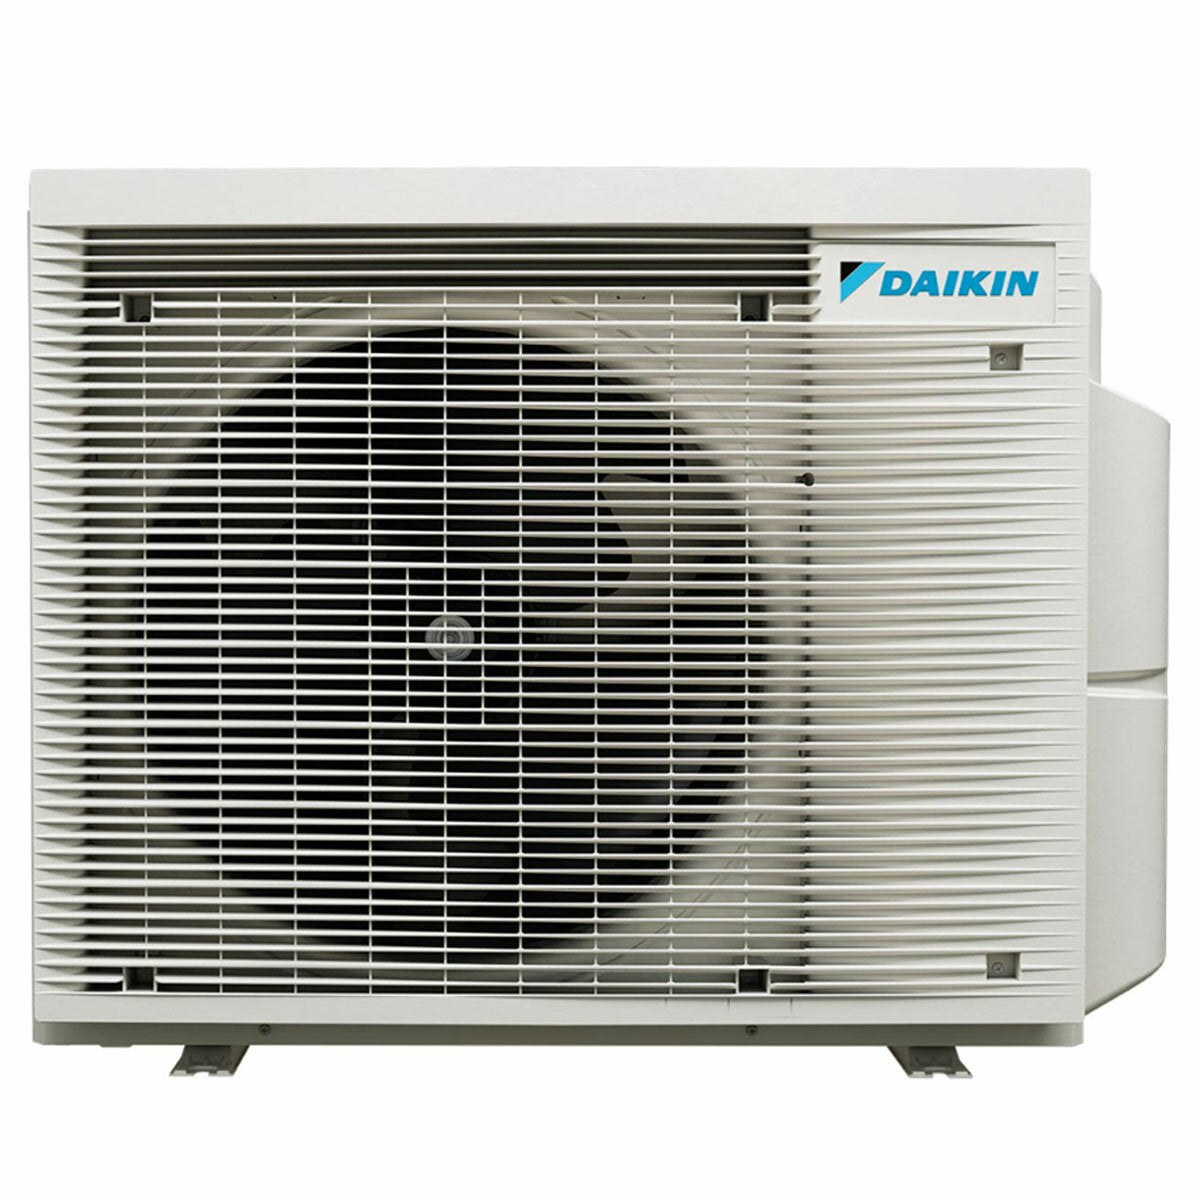 Daikin Emura 3 trial split air conditioner 9000+12000+15000 BTU inverter A+ wifi outdoor unit 6.8 kW Silver